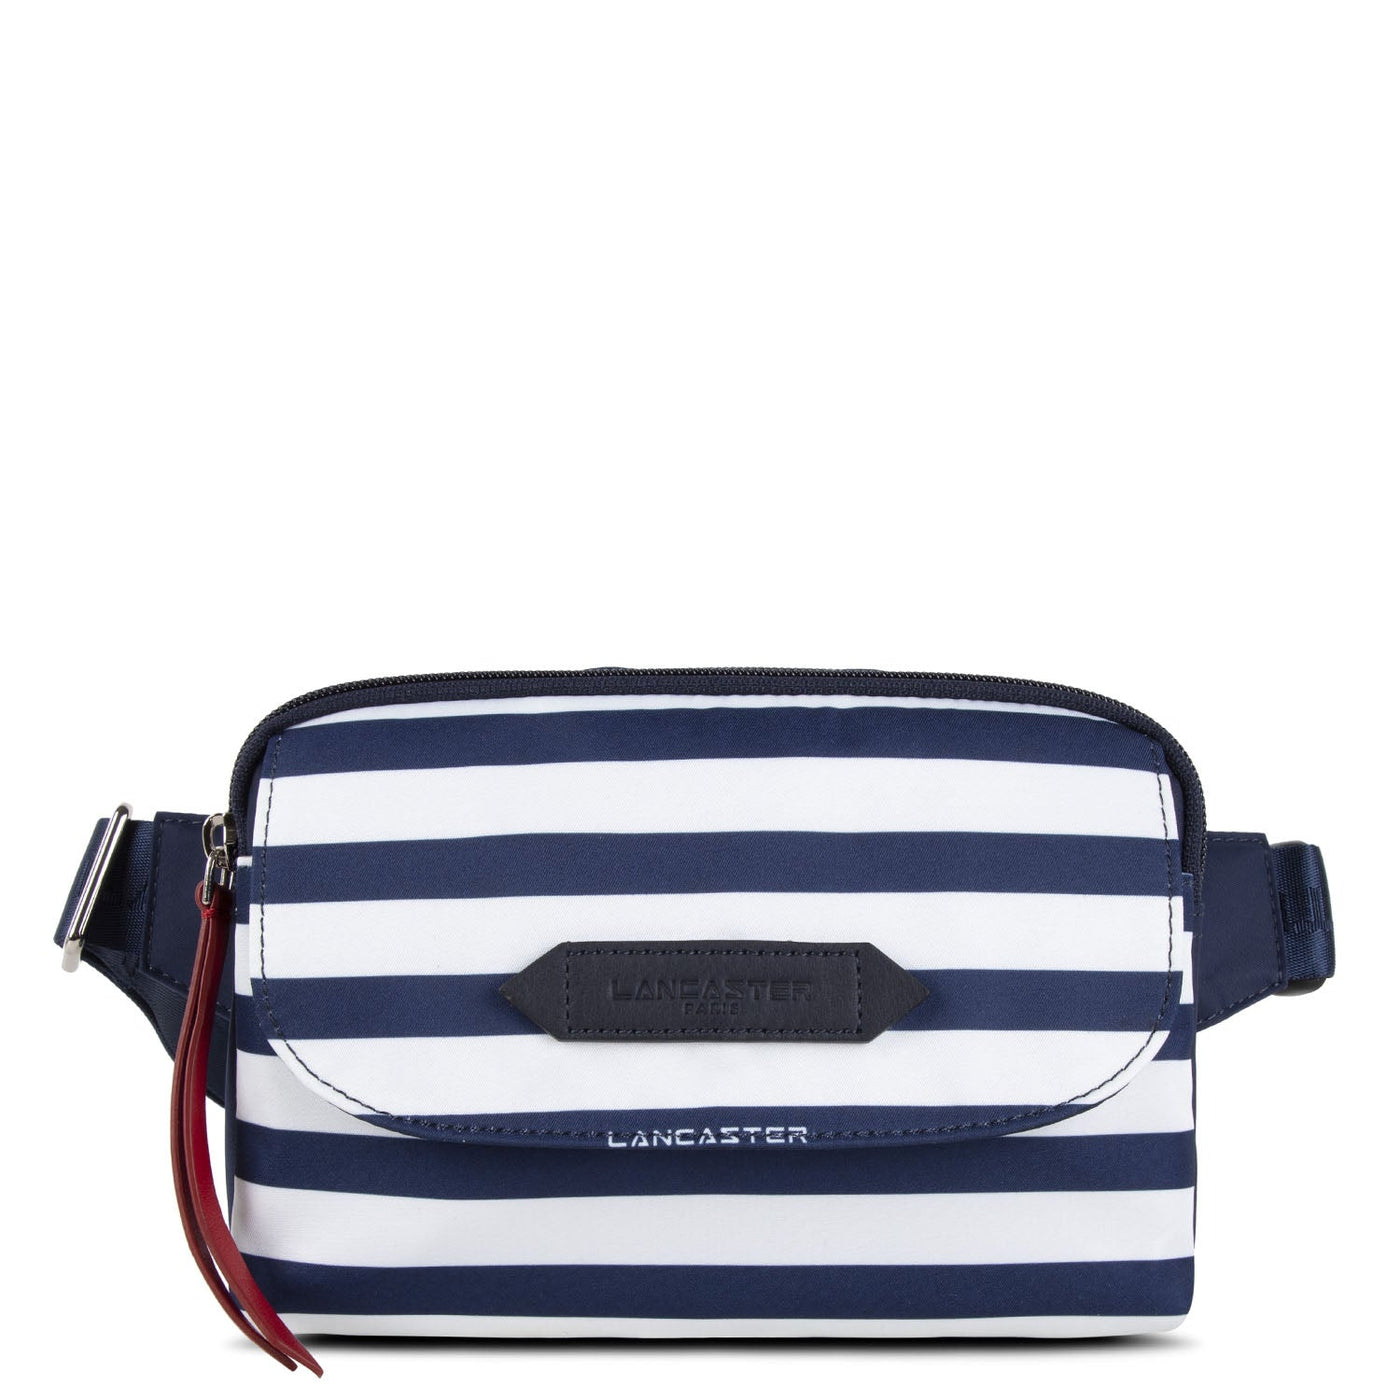 belt bag - basic sport #couleur_marinire